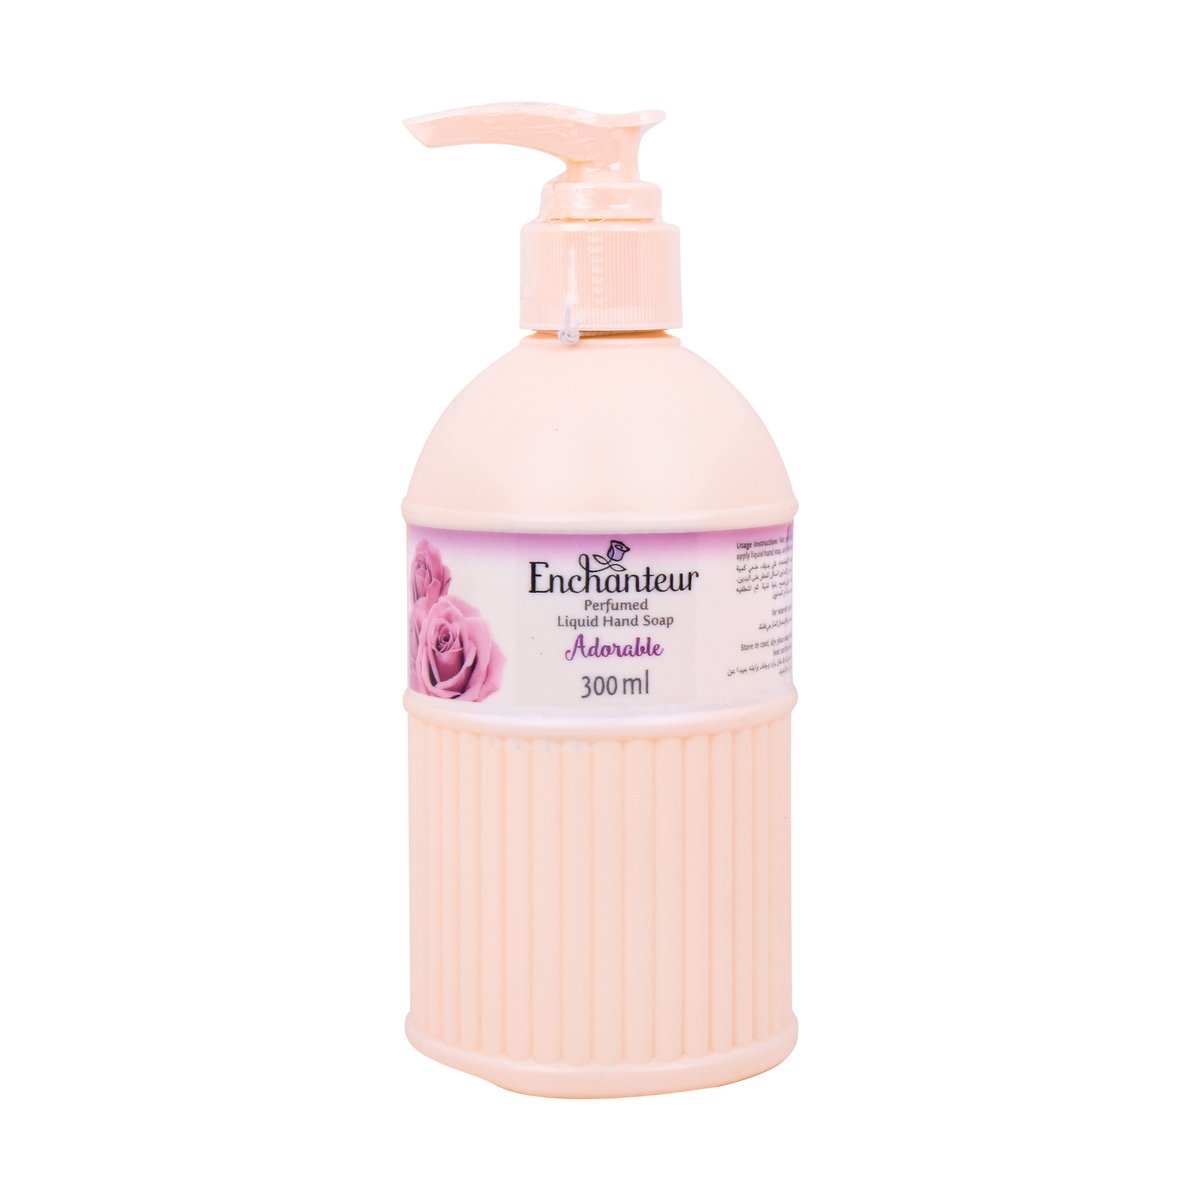 Enchanteur Perfumed Liquid Hand Soap Adorable 300ml